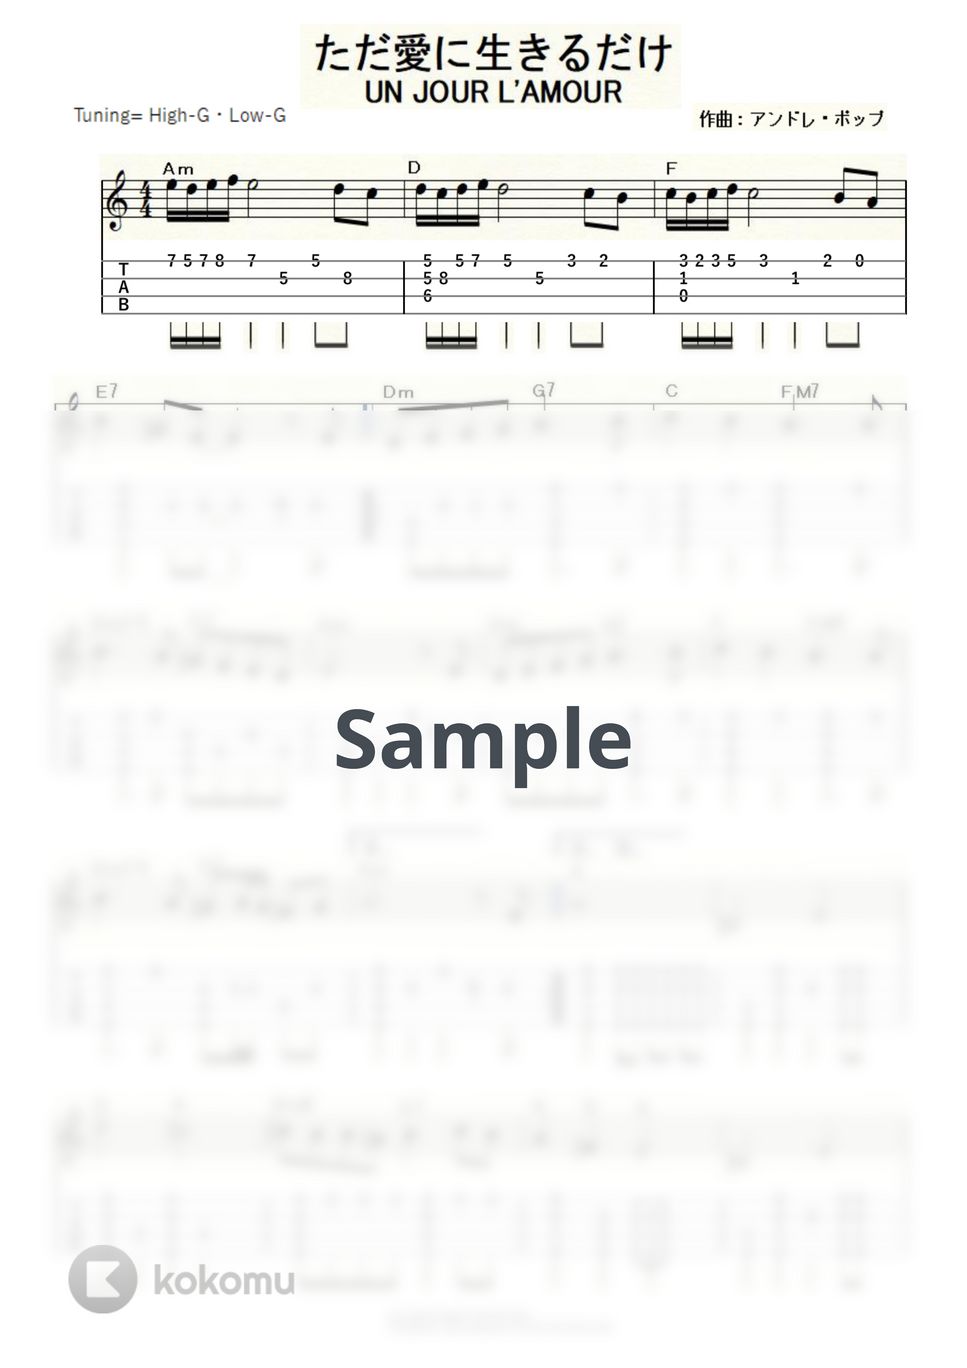 マルティーヌ・クレマンソー - ただ愛に生きるだけ～UN JOUR L’AMOUR～ (ｳｸﾚﾚｿﾛ/High-G・Low-G/中級) by ukulelepapa